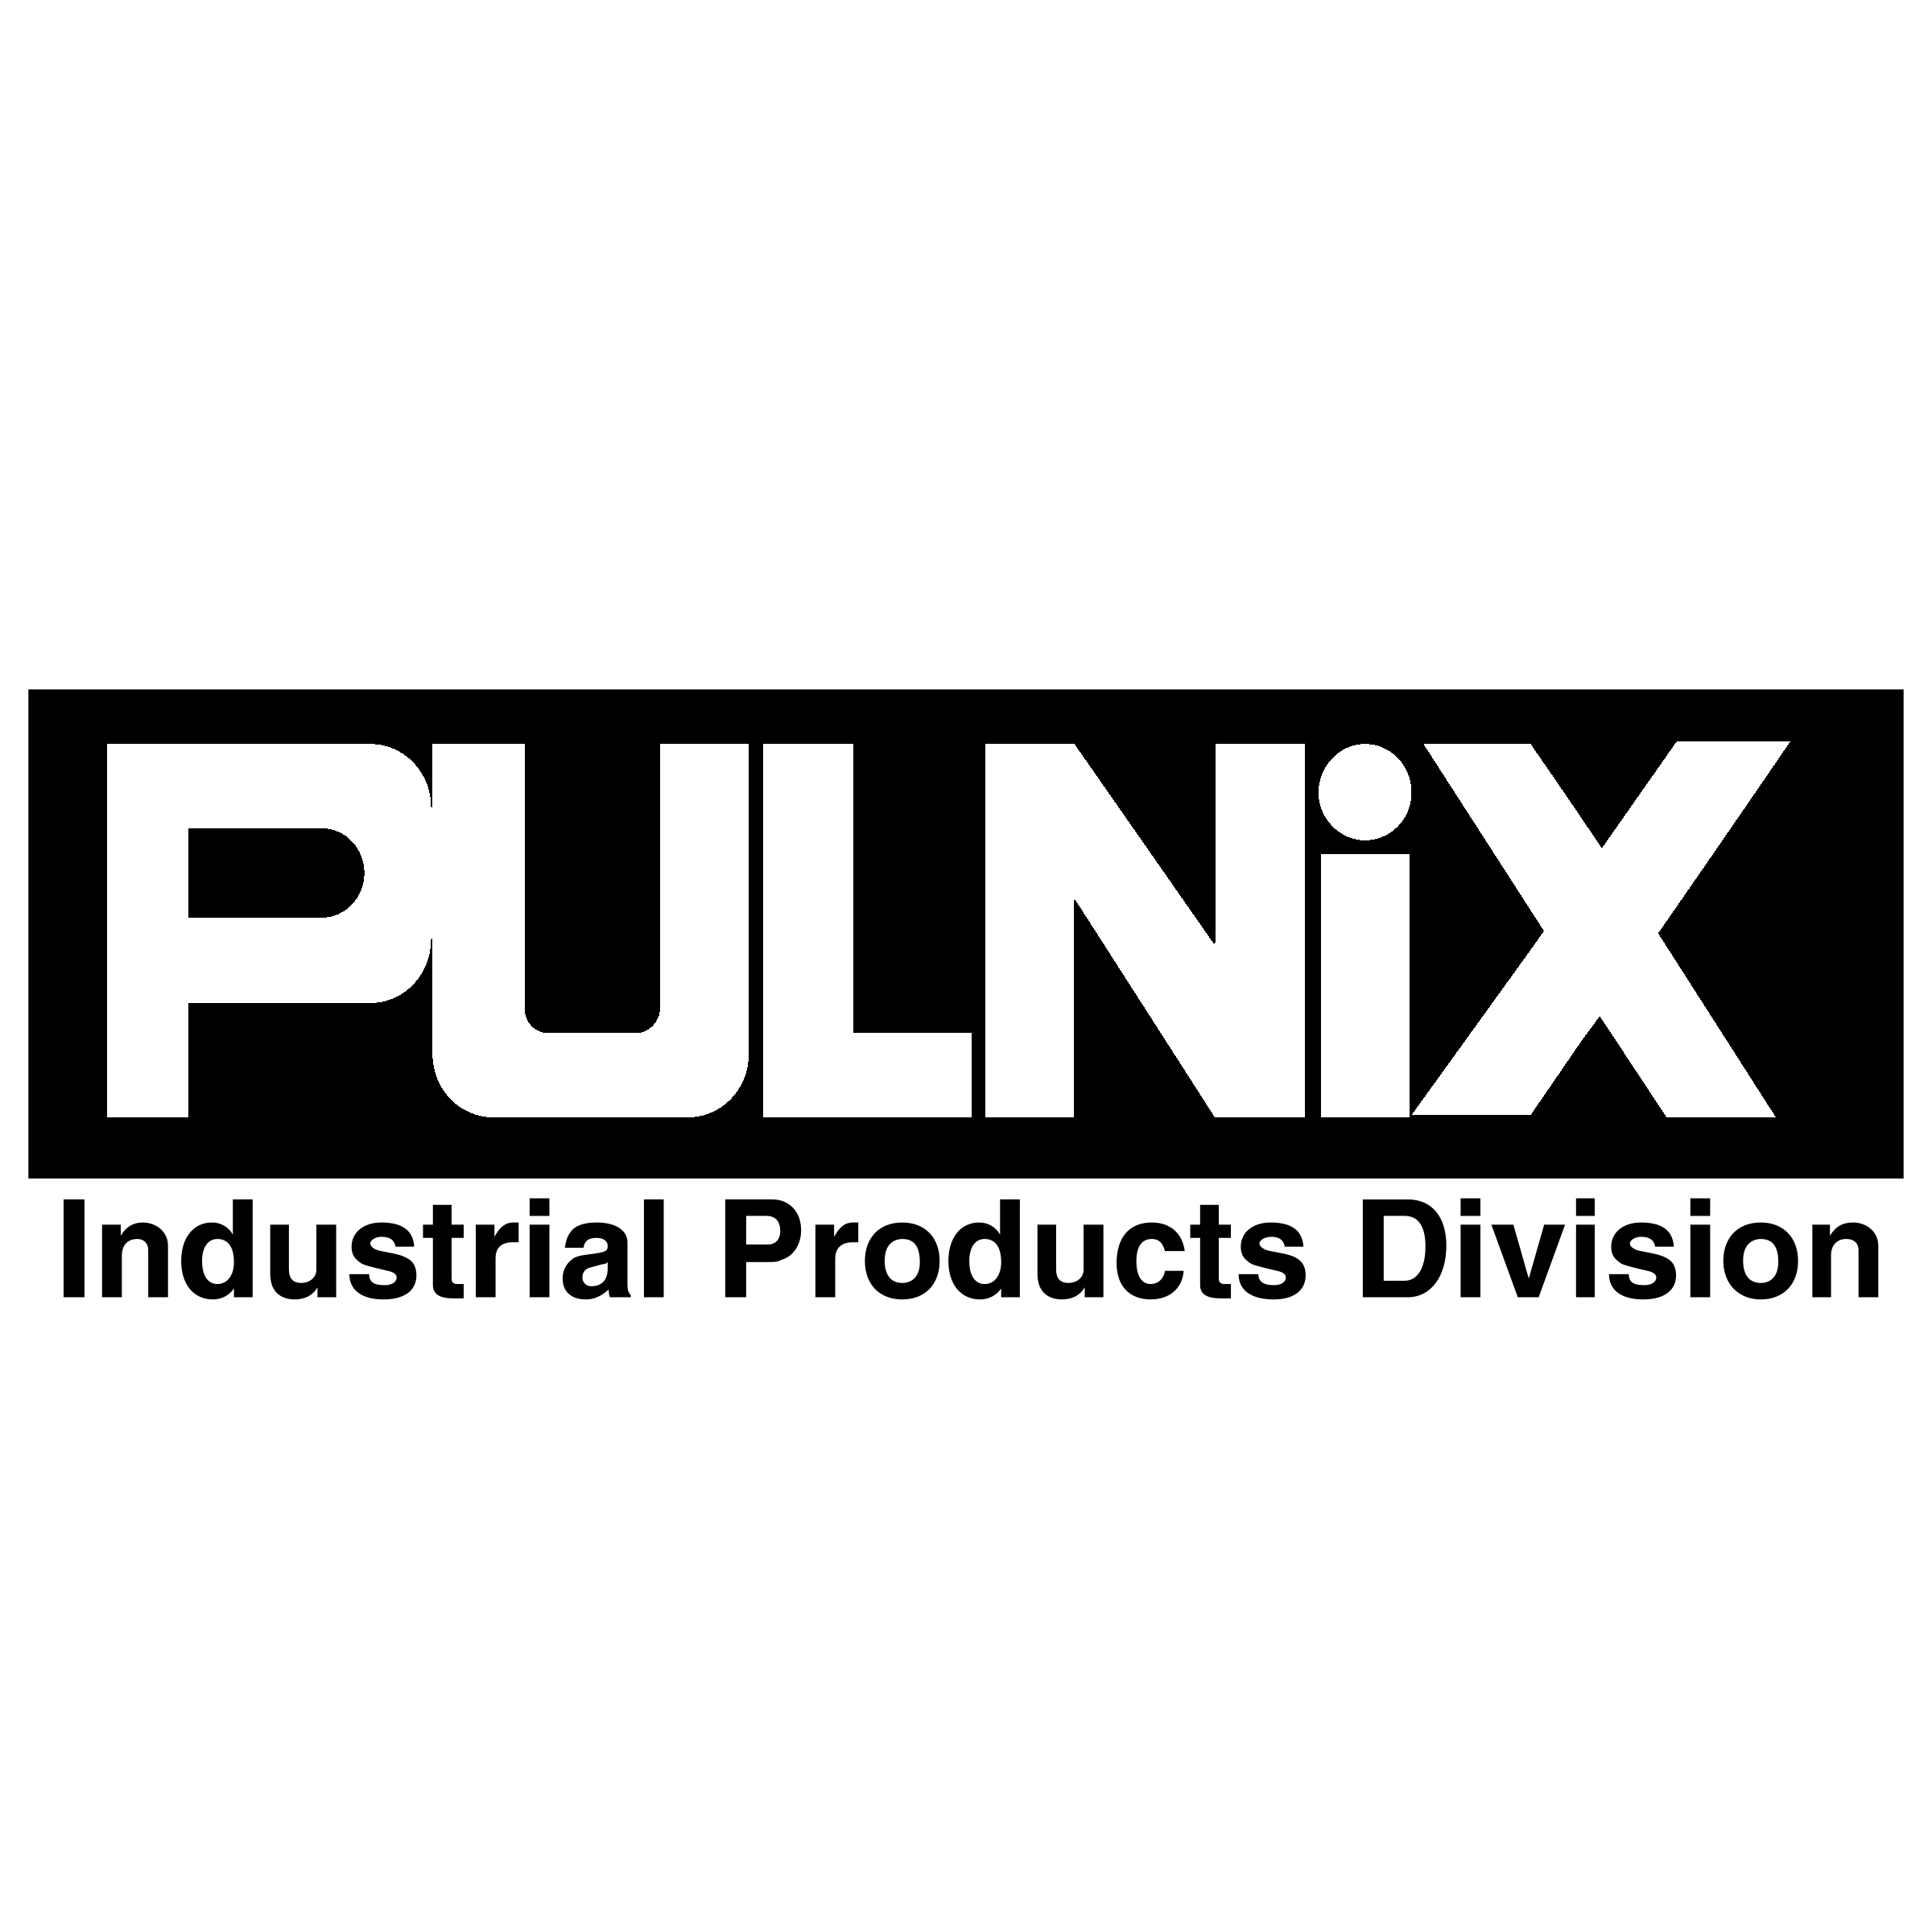 Pulnix